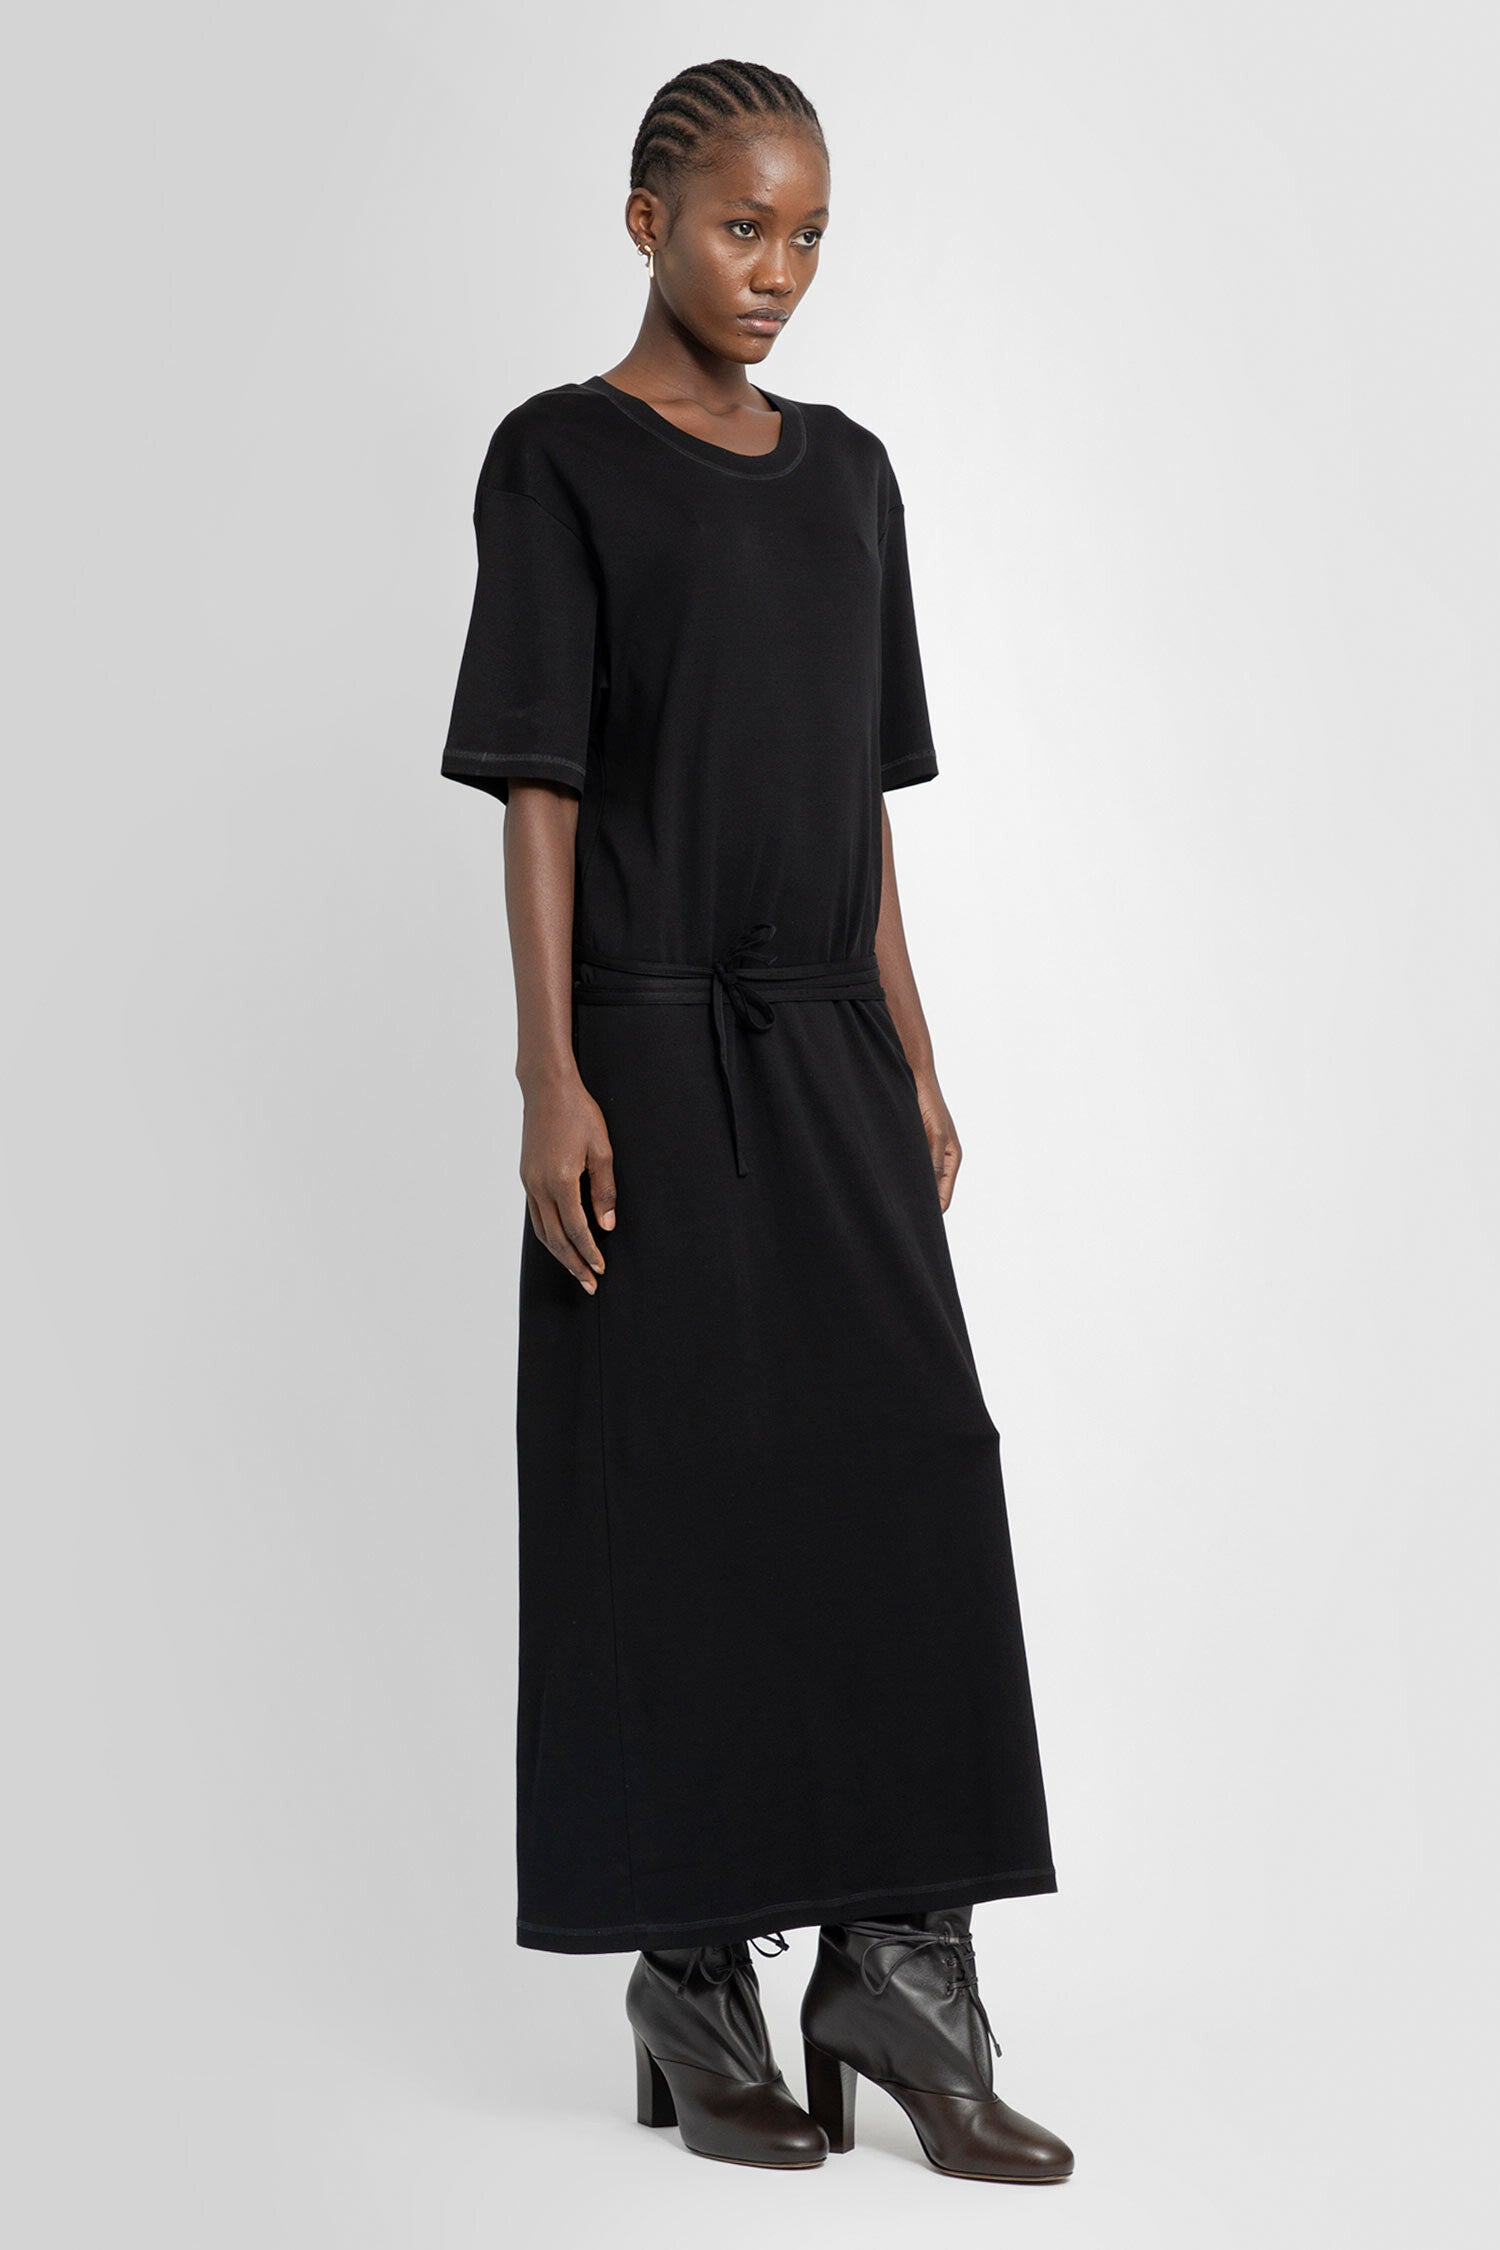 LEMAIRE WOMAN BLACK DRESSES